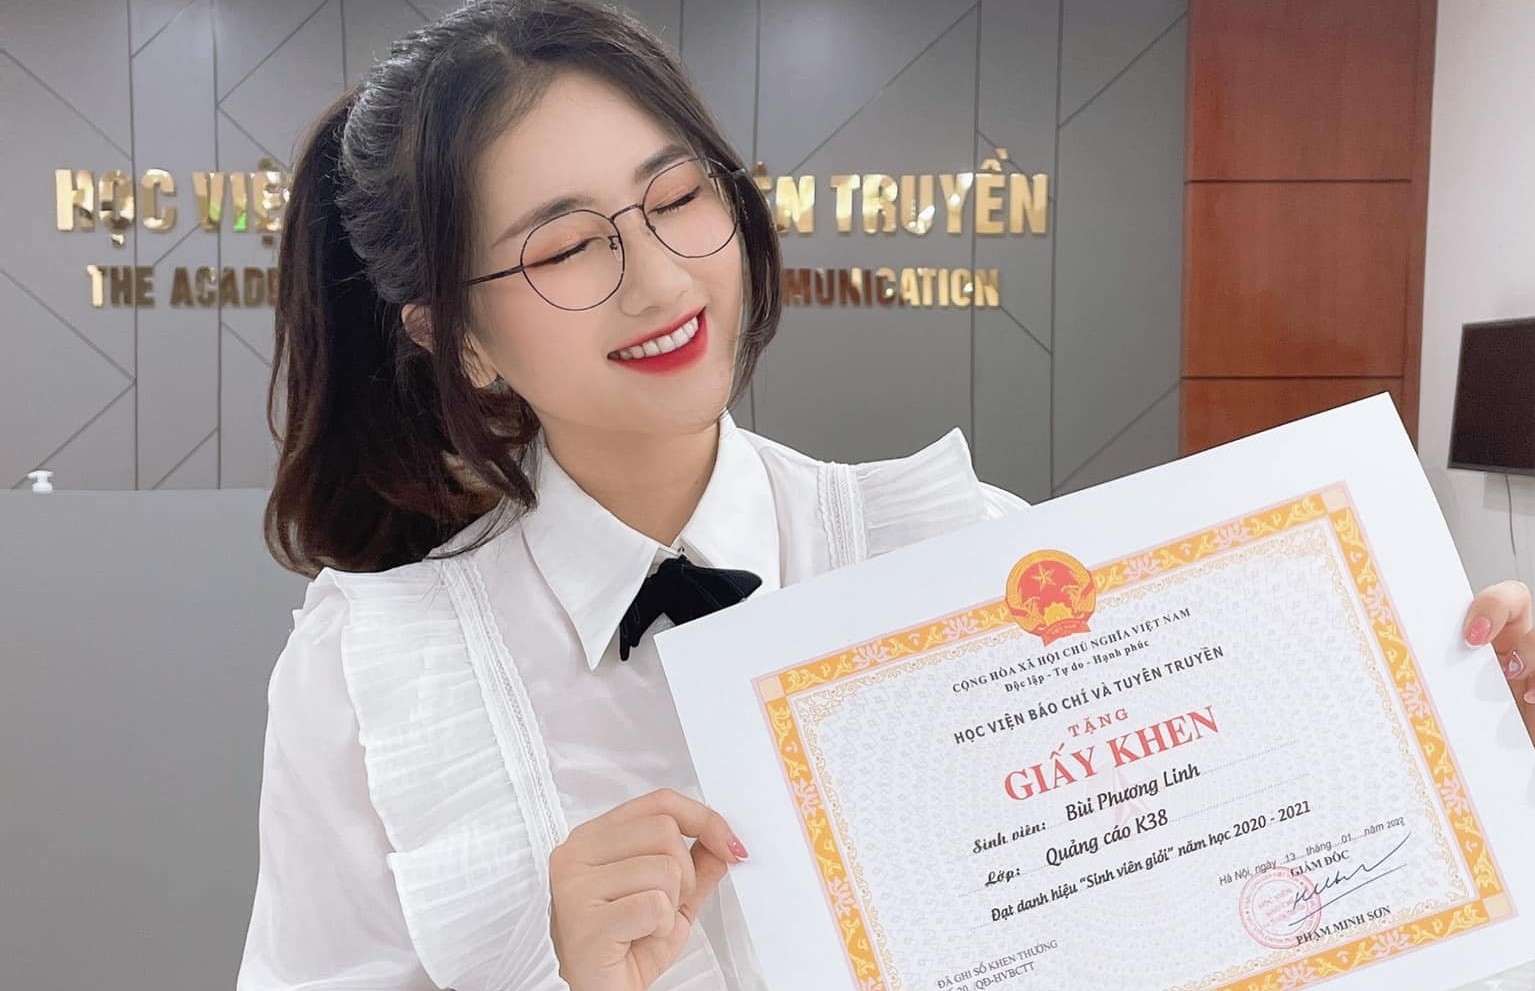 Nữ MC Linh Nắng xinh đẹp rạng ngời trong ngày nhận bằng tốt nghiệp đại học